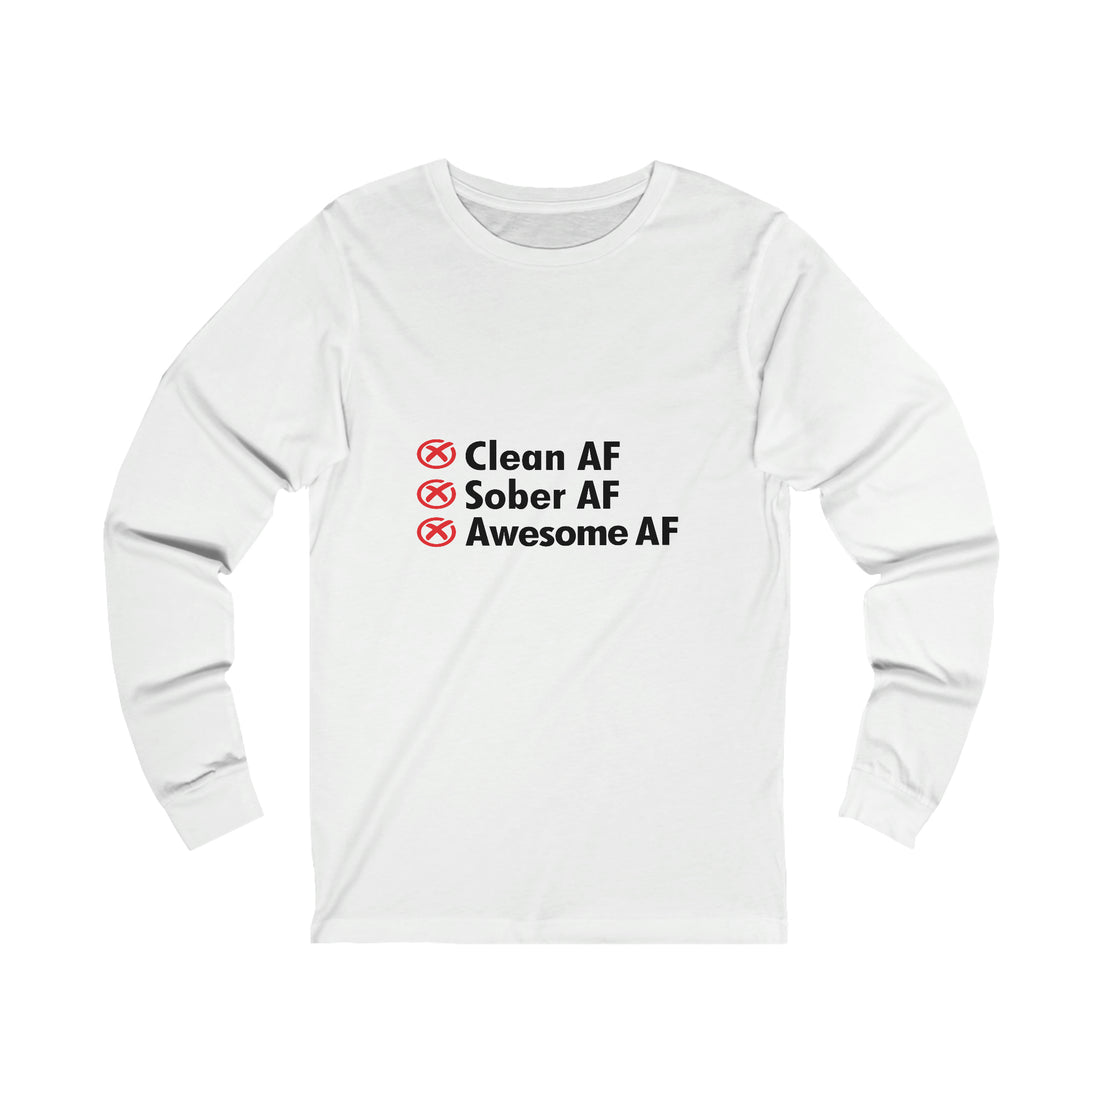 Clean AF Sober AF Awesome AF - Unisex Jersey Long Sleeve Tee